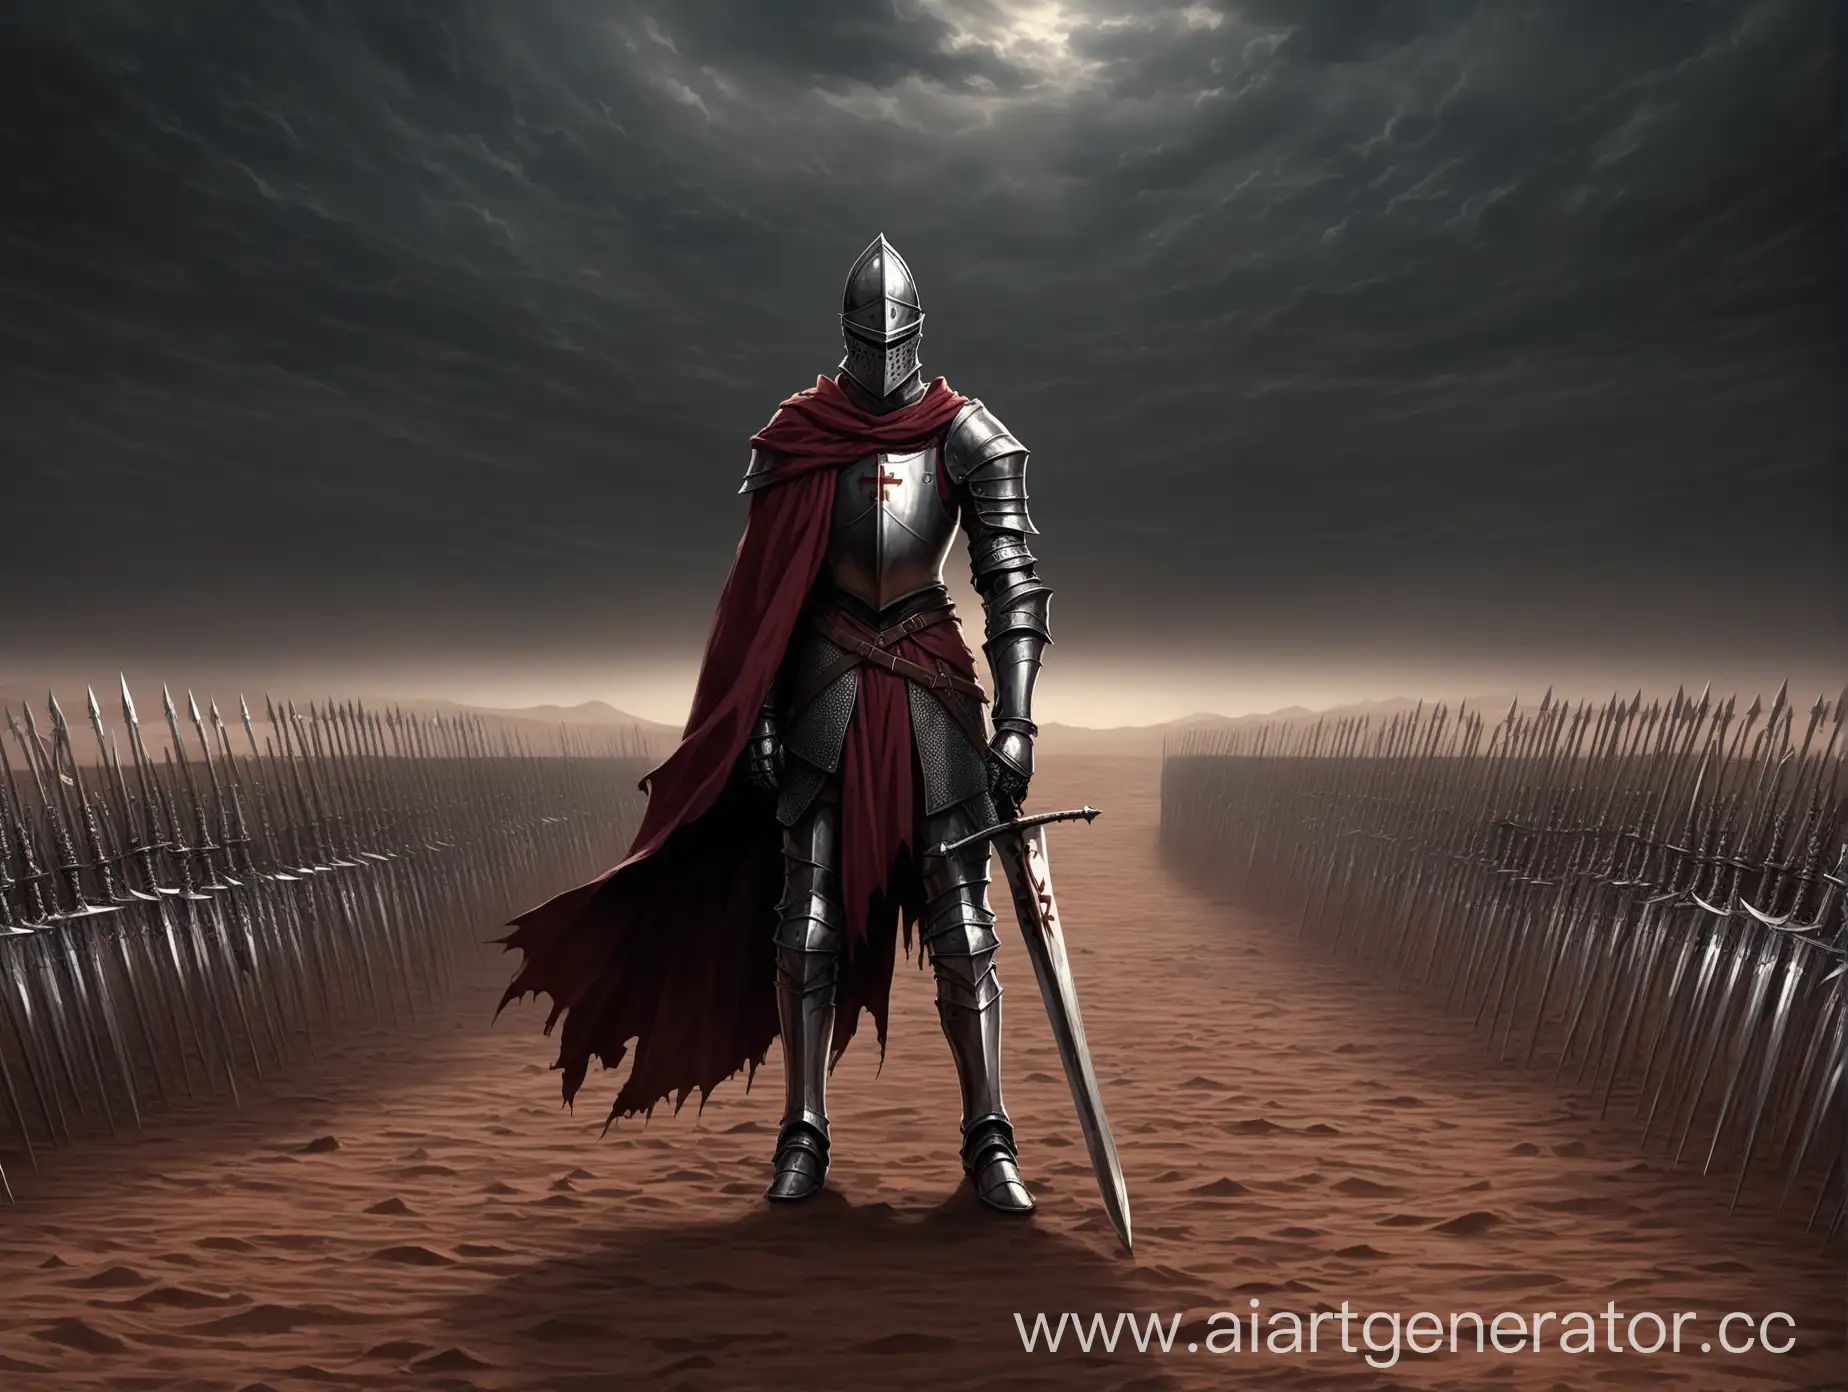 Knight-Warrior-Standing-in-Desert-Field-of-Swords